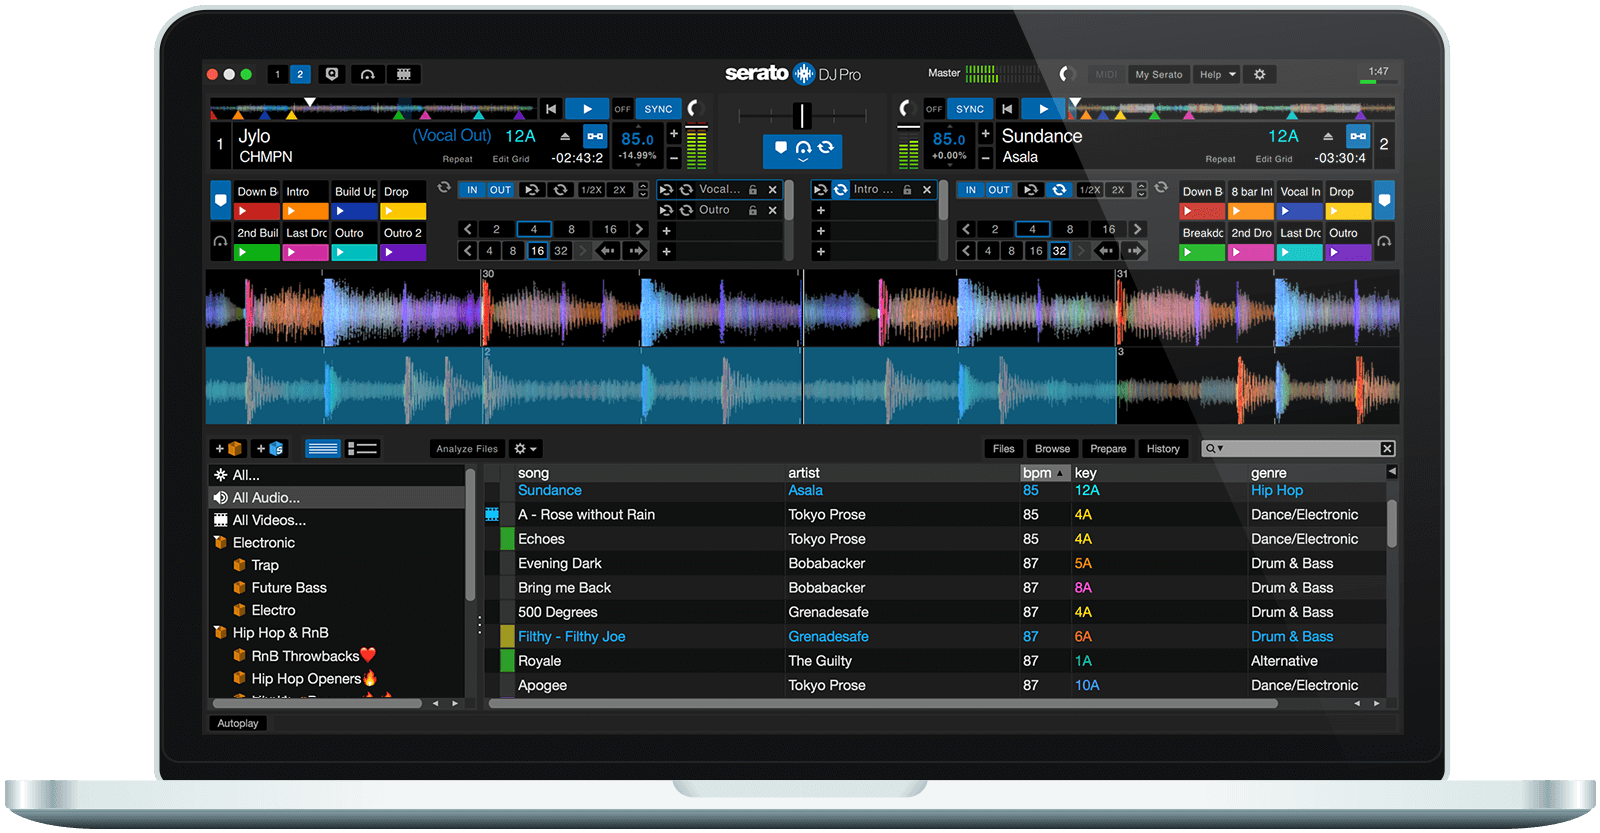 Serato DJ Pro 3.0.10.164 instal the last version for ios